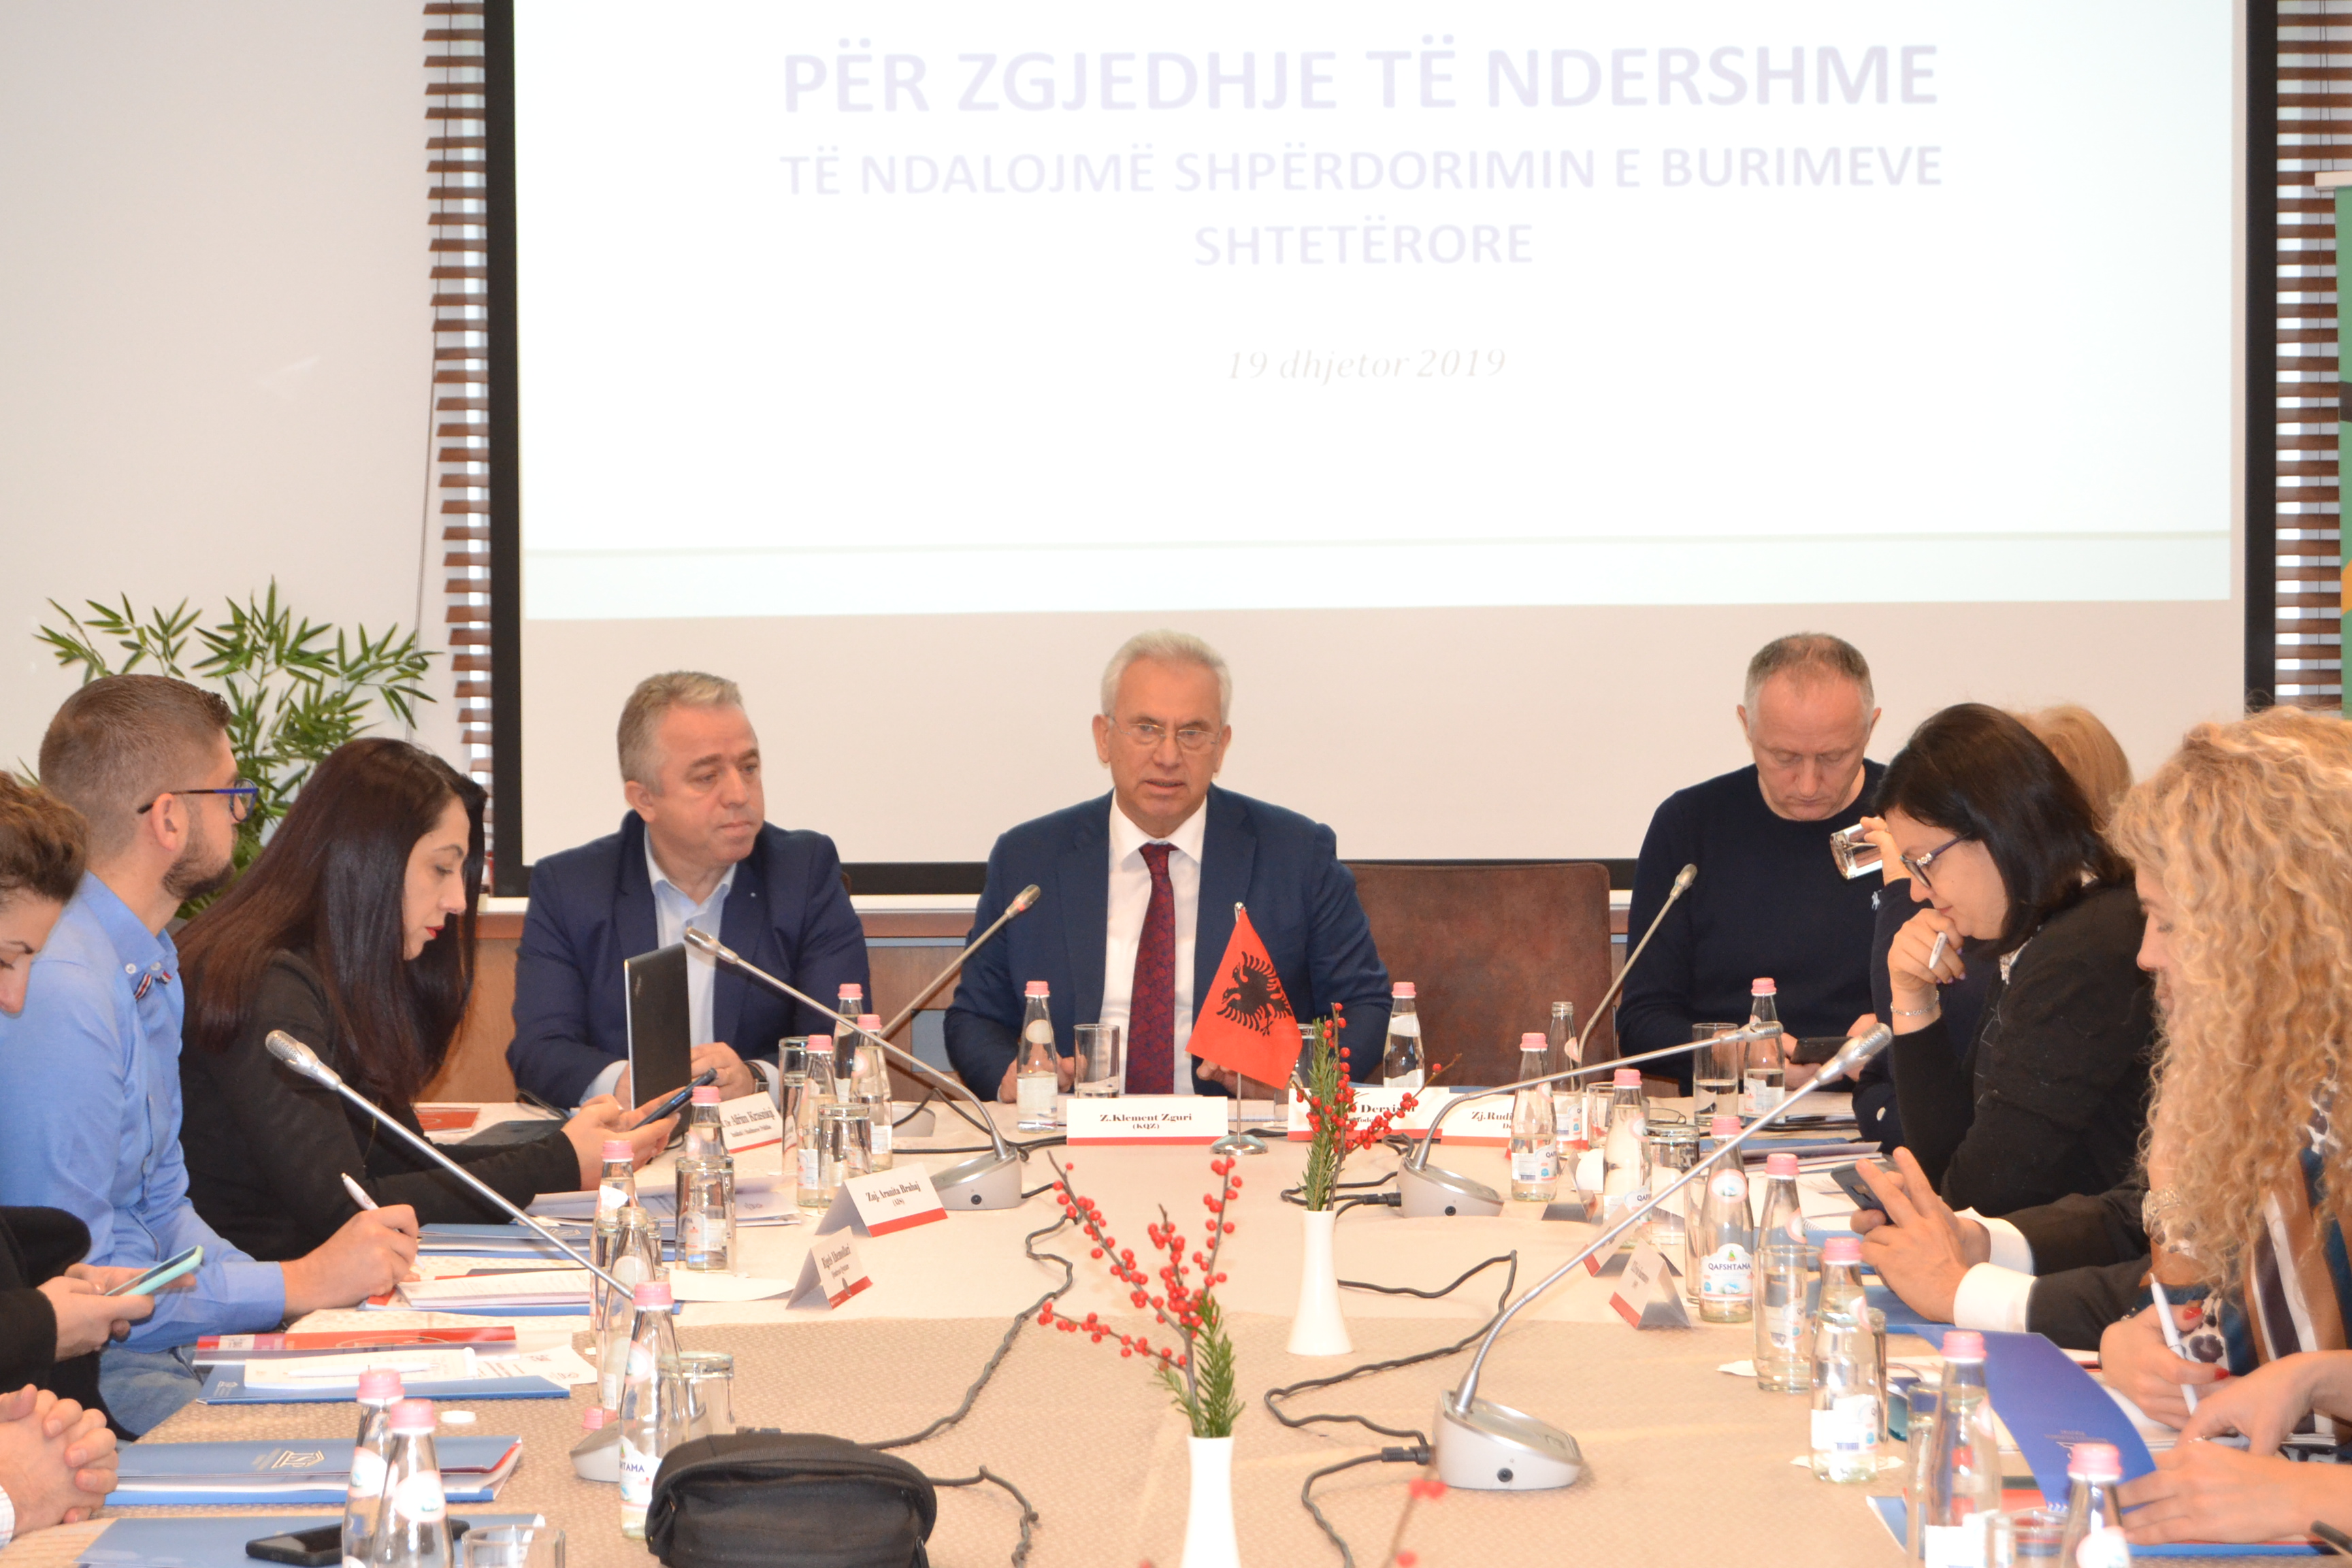 Kryetari i KQZ-së, z. Klement Zguri merr pjesë në konferencën “Për zgjedhje ndershme: Të ndalojmë shpërdorimin e burimeve shtetërore”.